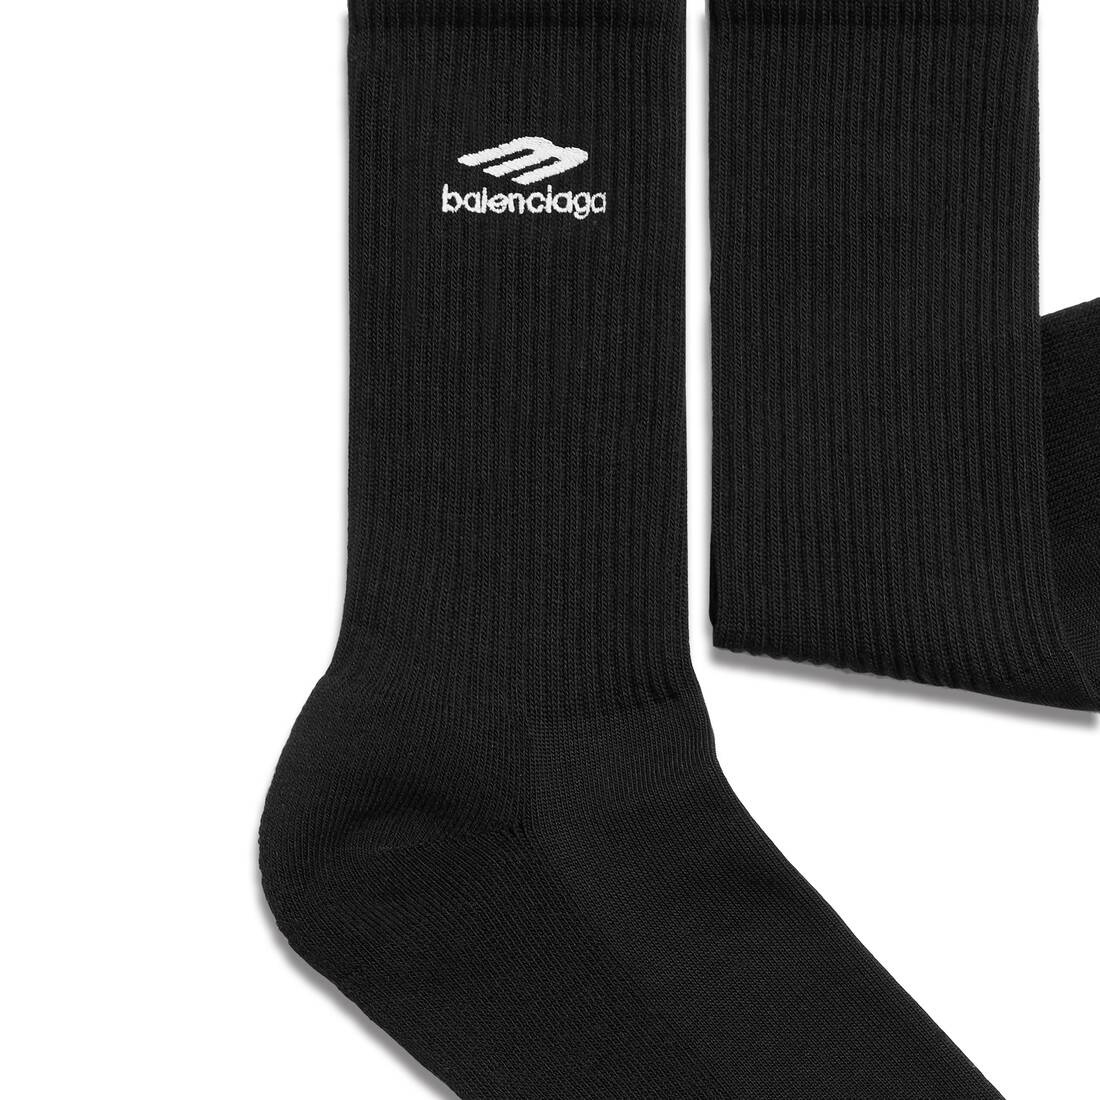 3b Sports Icon Socks in Black/white - 2